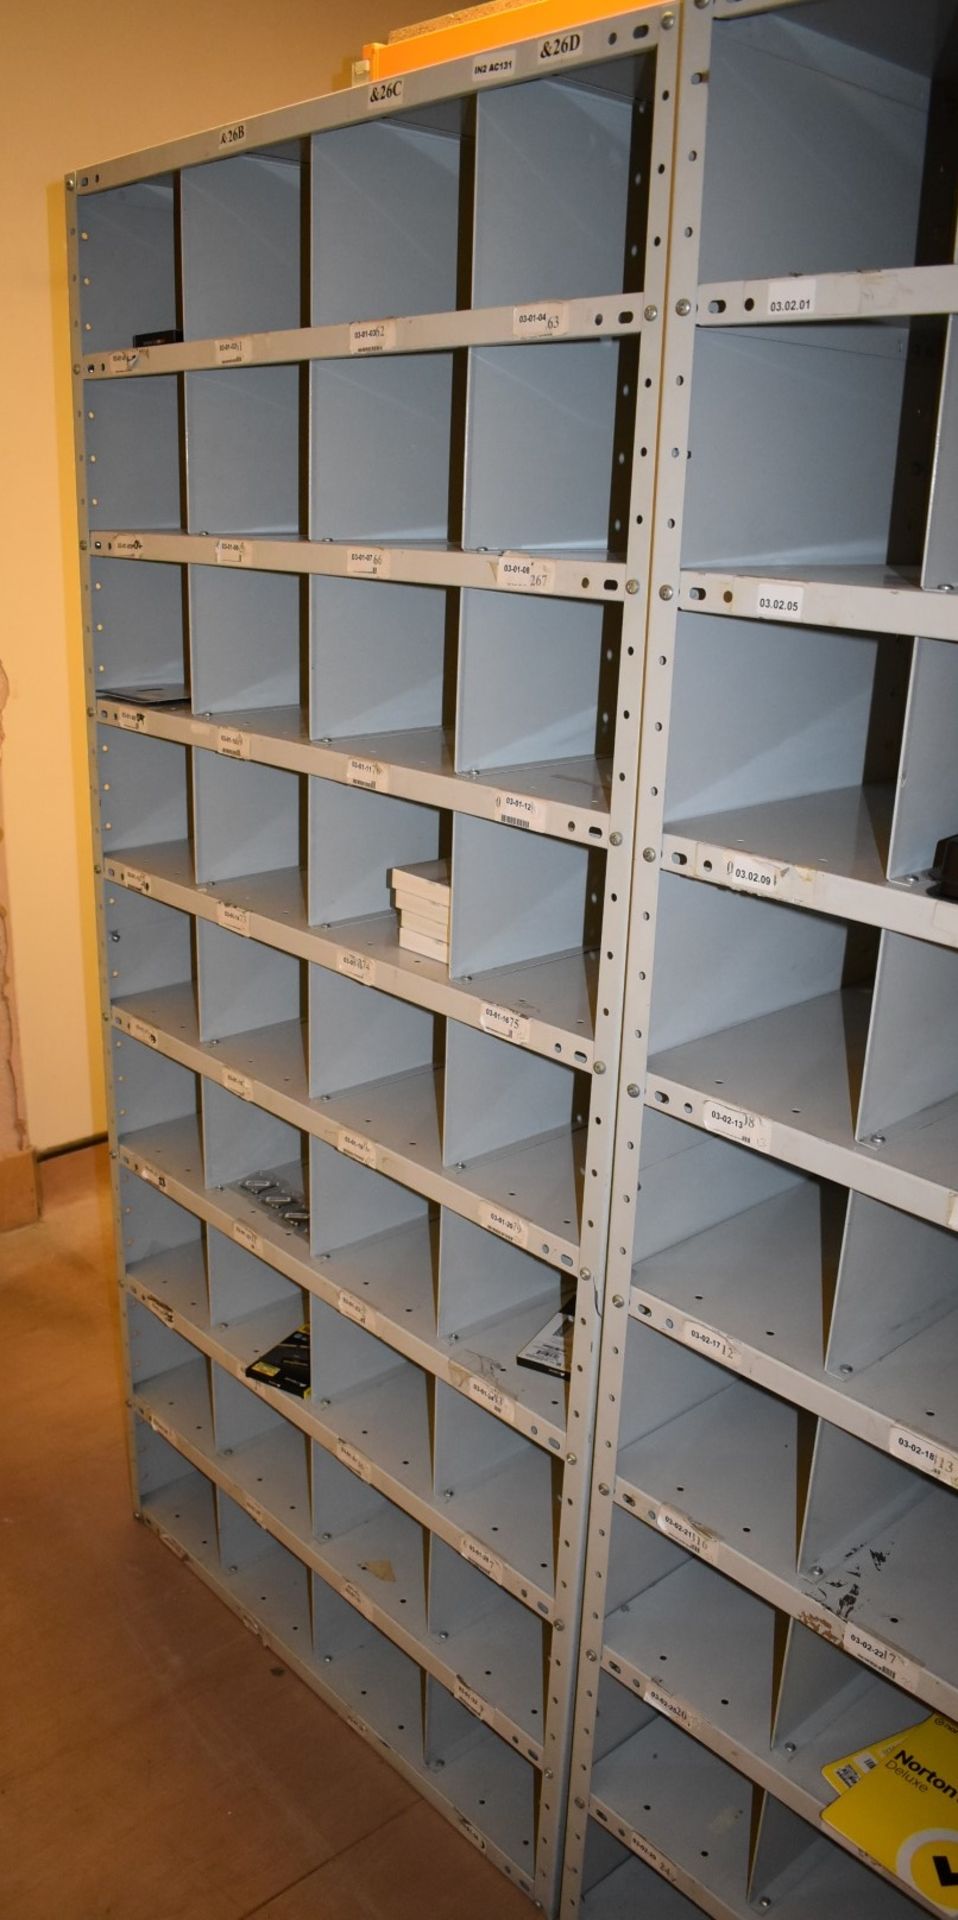 1 x Grey Metal Pigeon Hole Storage Unit - Size: H186 x W92 x D39 cms